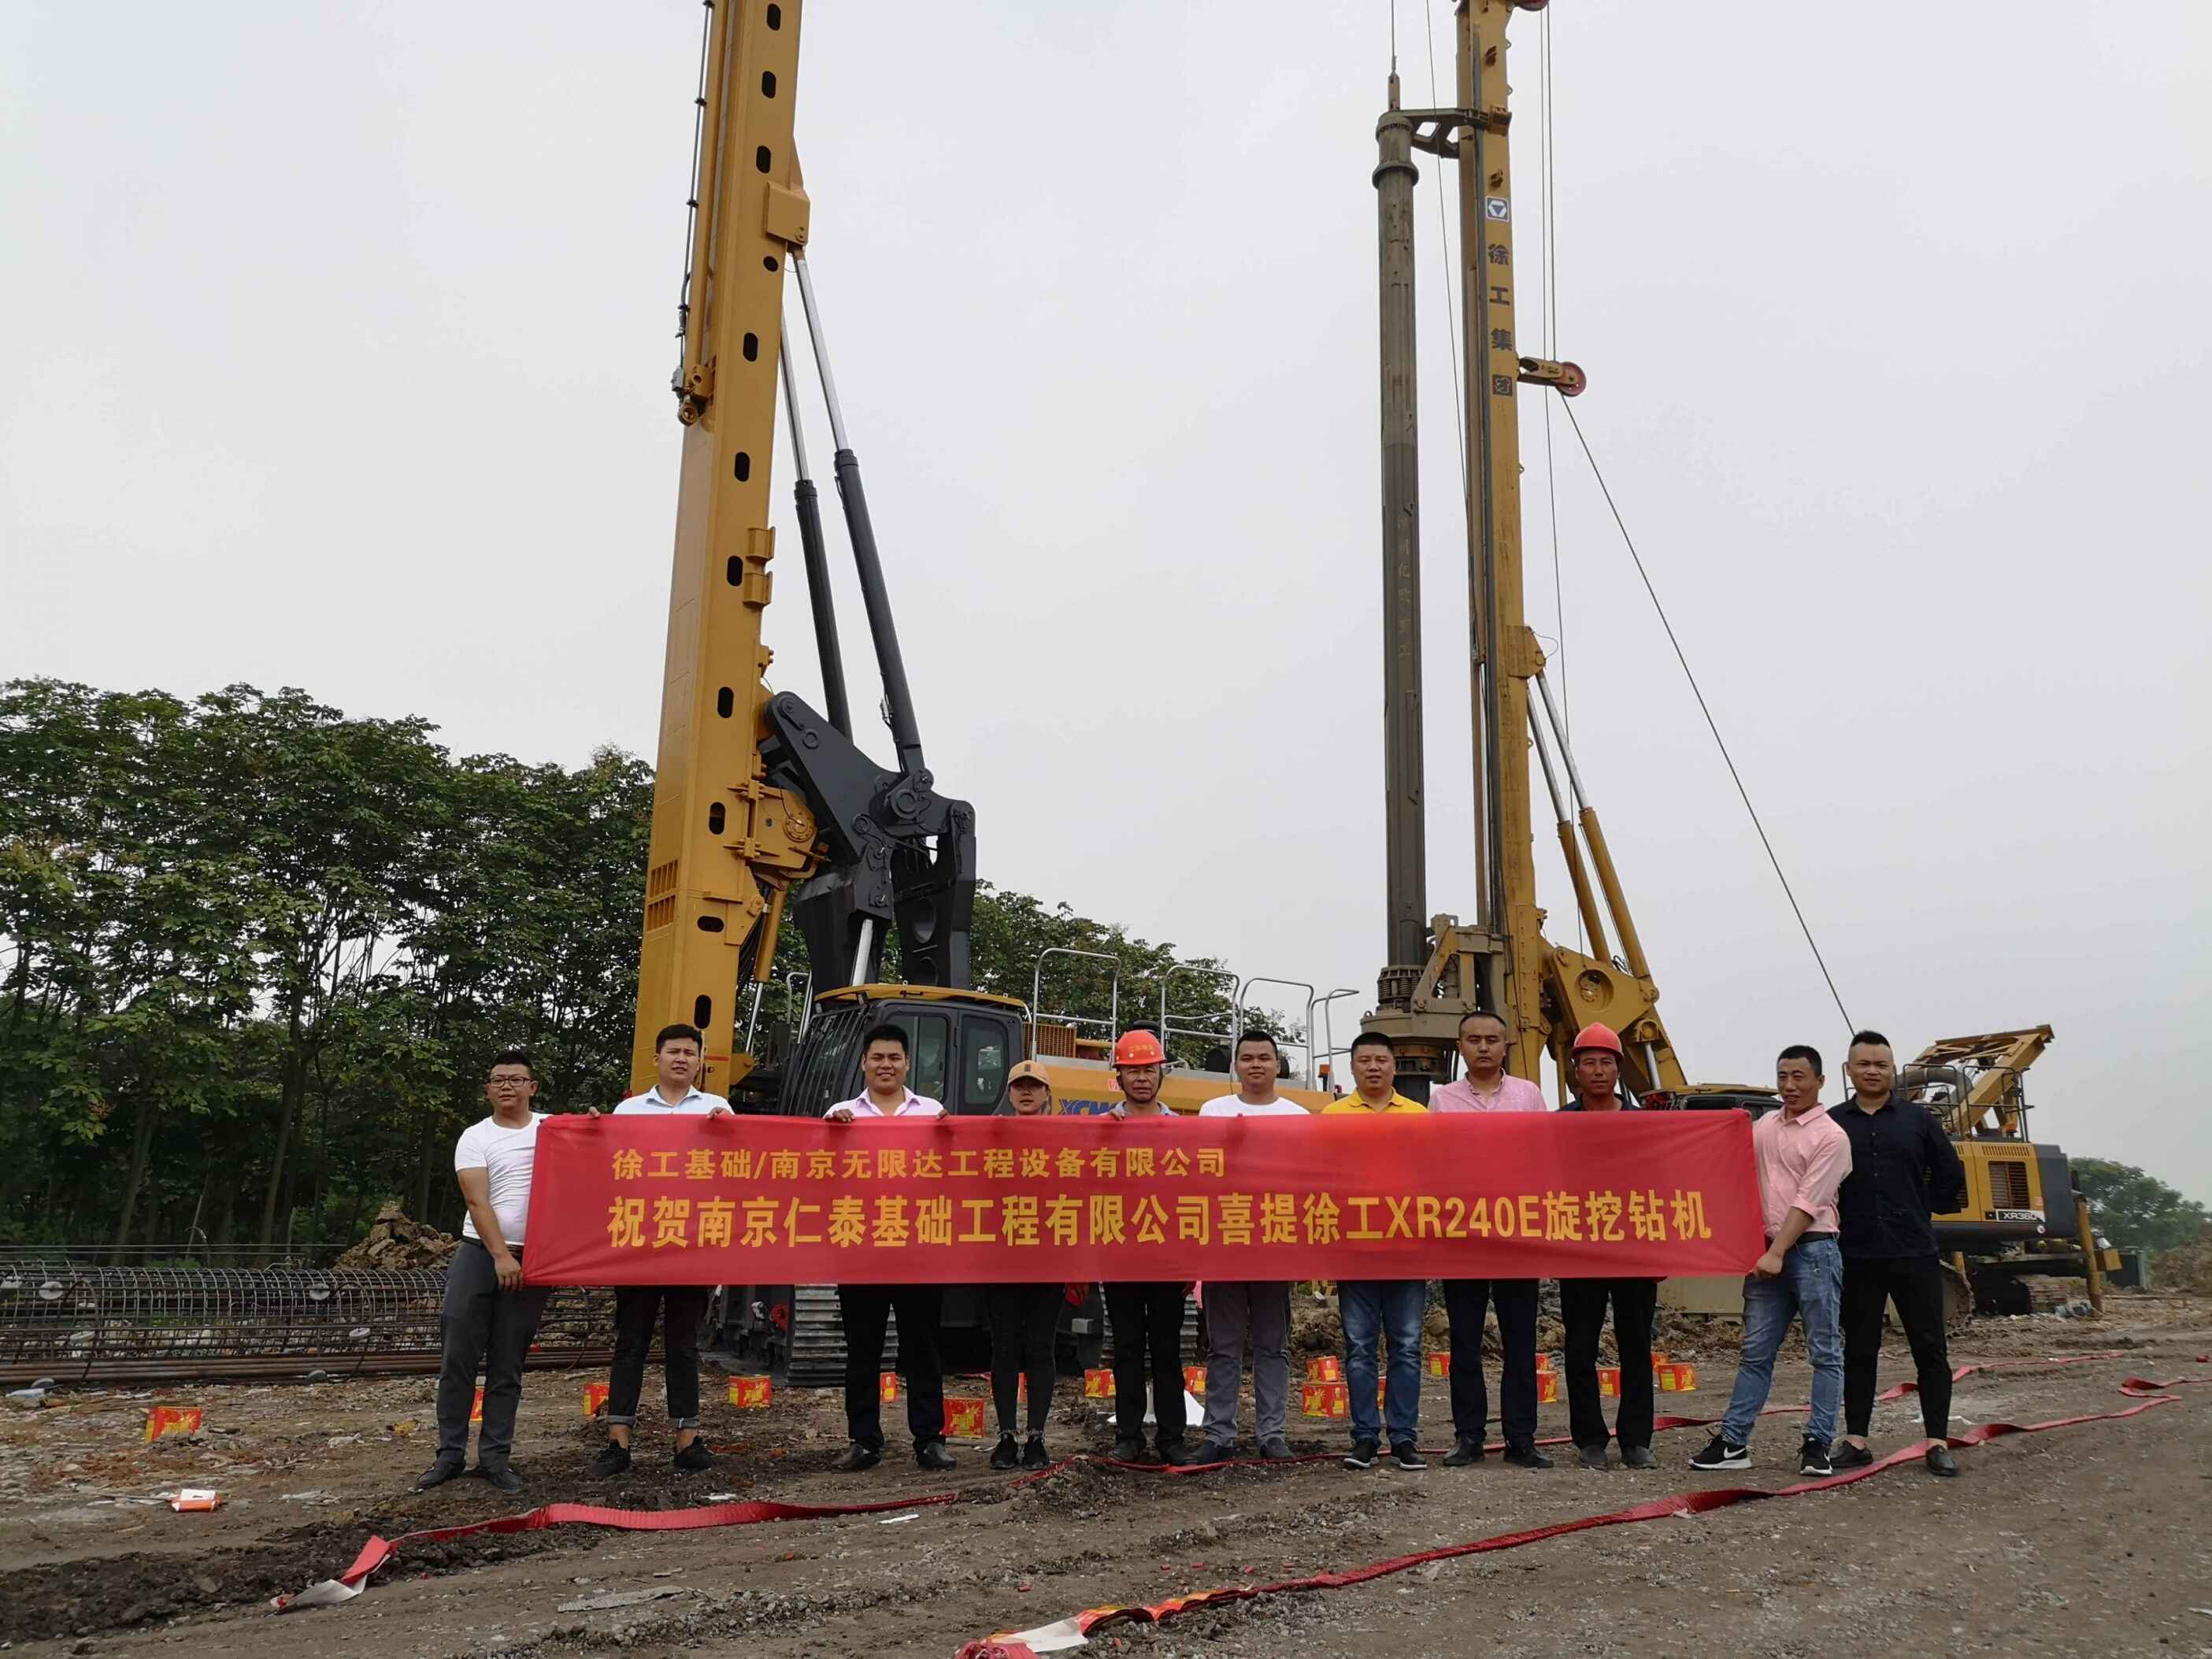 祝賀南京仁泰基礎工程設備有限公司從無限達喜提徐工XR240E旋挖鉆機